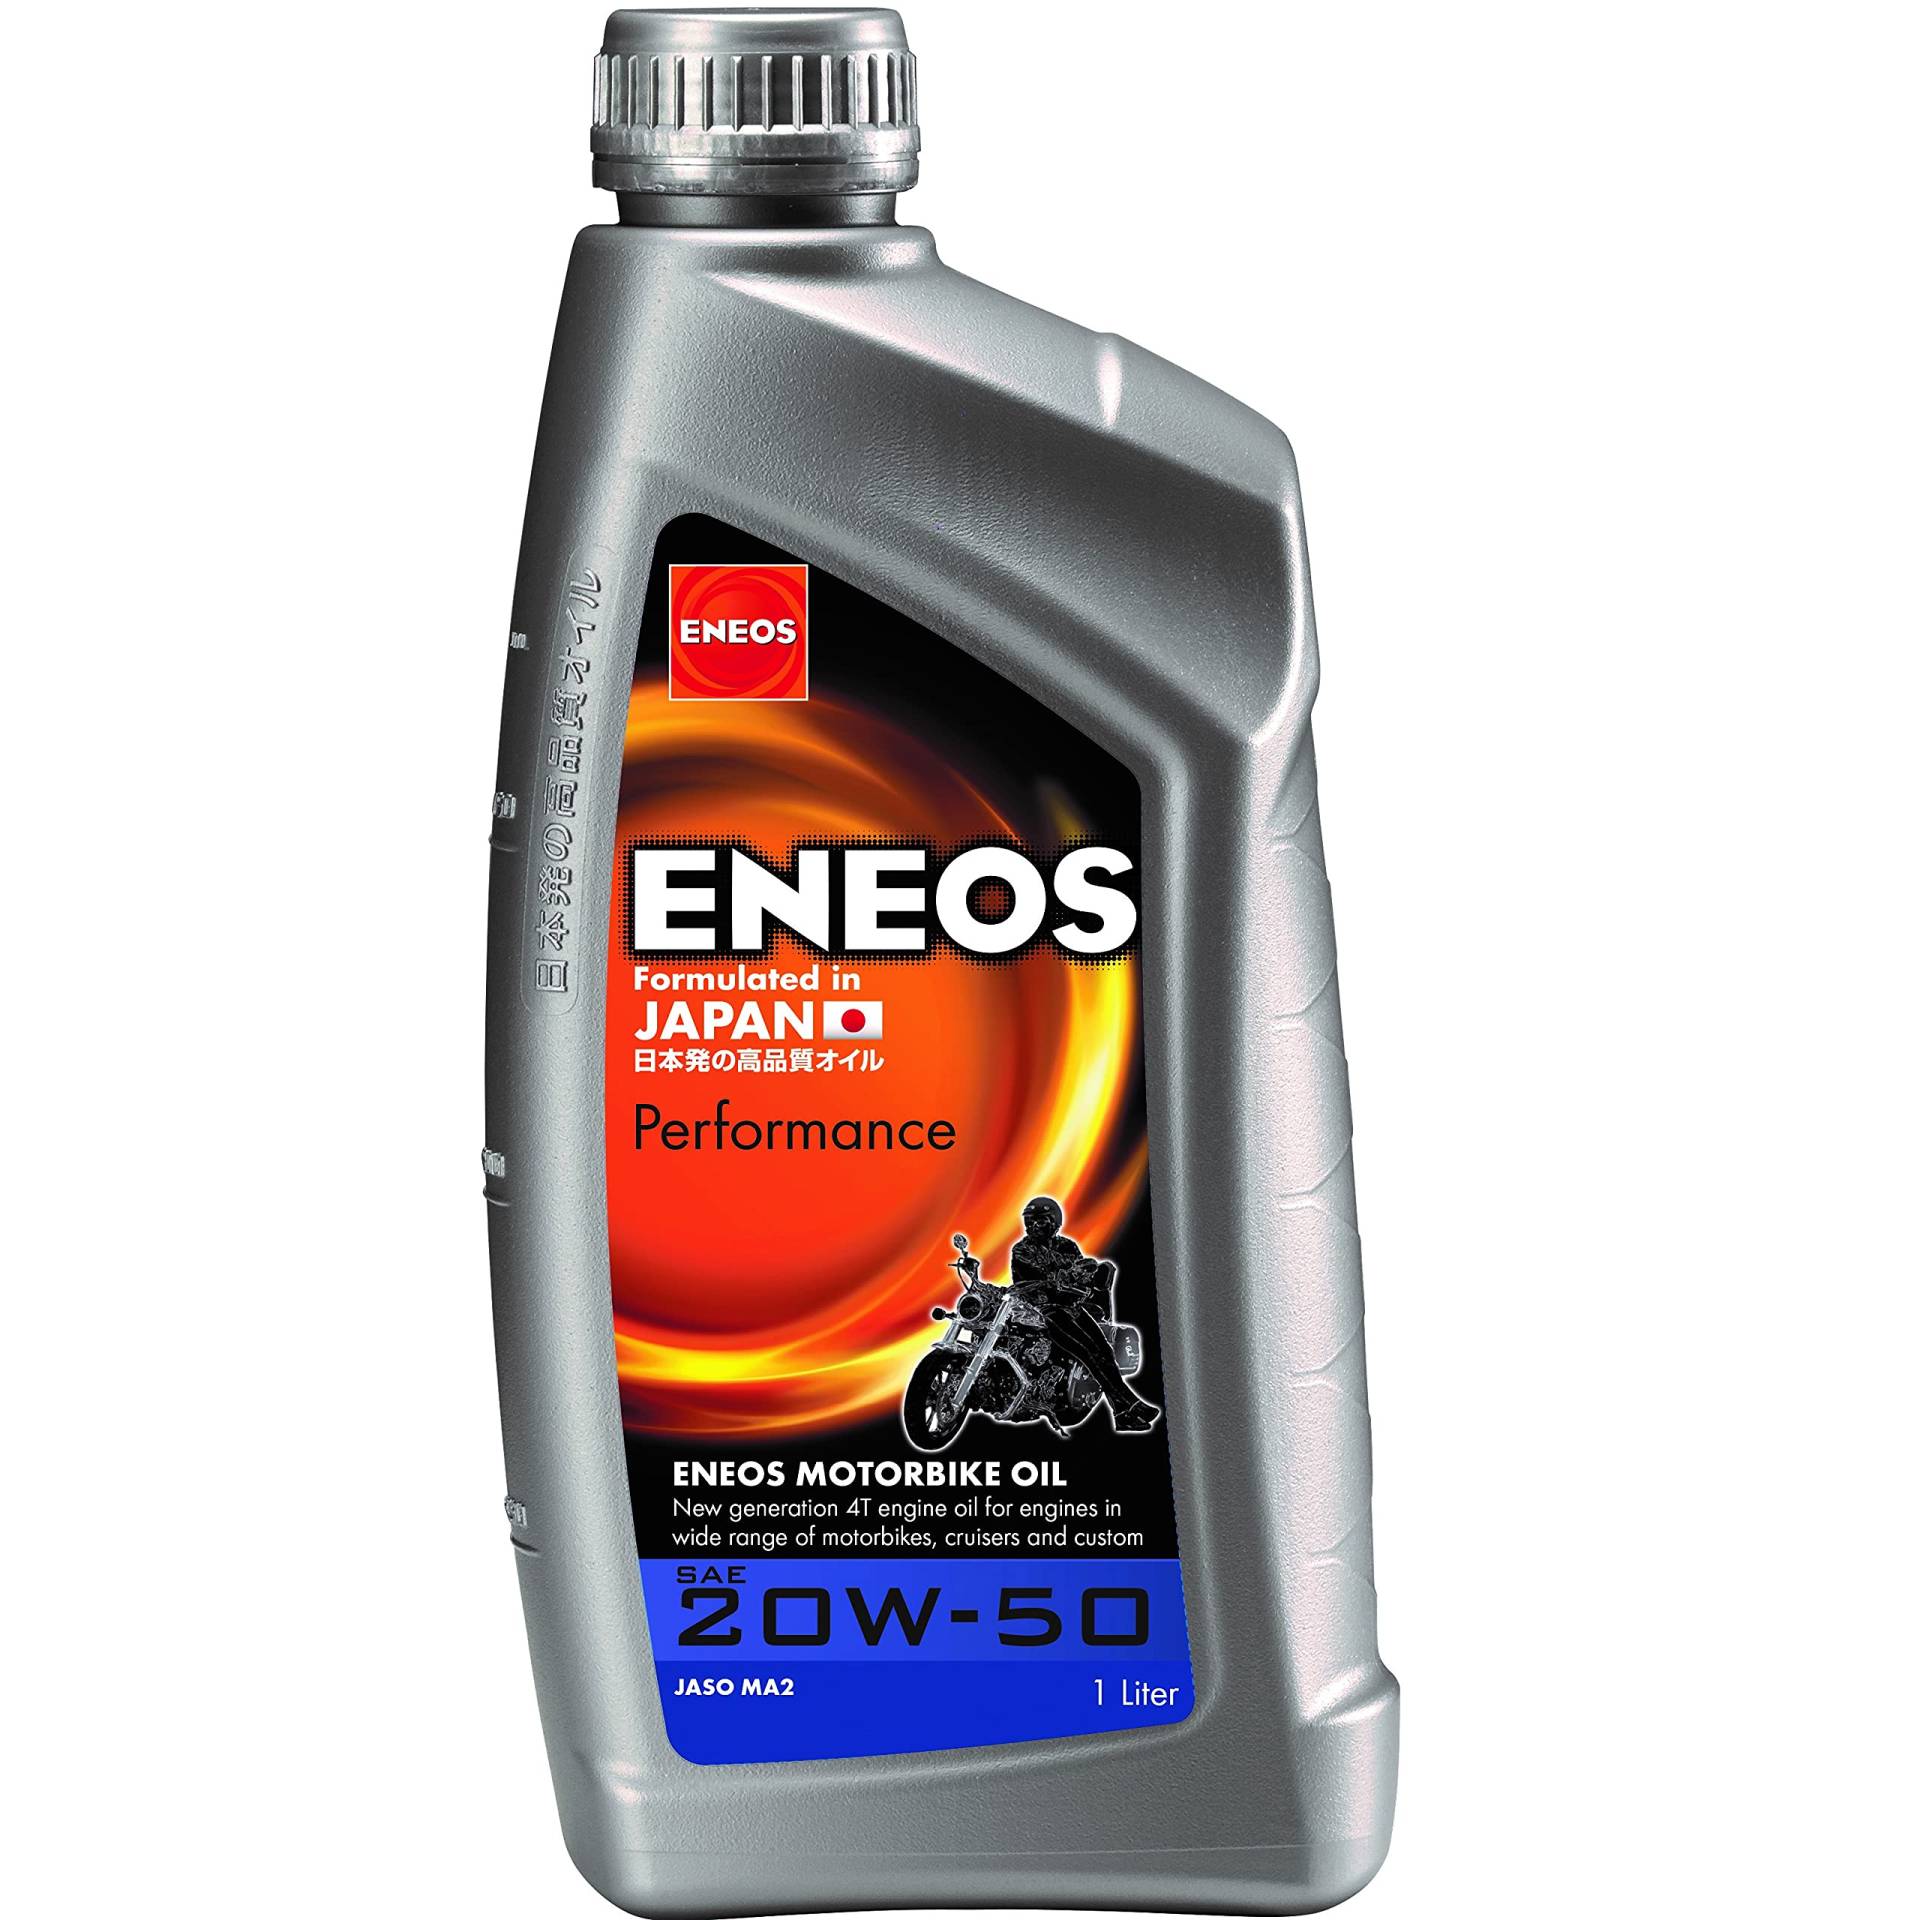 Eneos Performance Motoröl für Motorrad 4T 20W-50 - Hochwertiges Mineral Motorenöl - Fortschrittliches Motor Öl für 4 Takt Motorräder (1 Liter) von Eneos